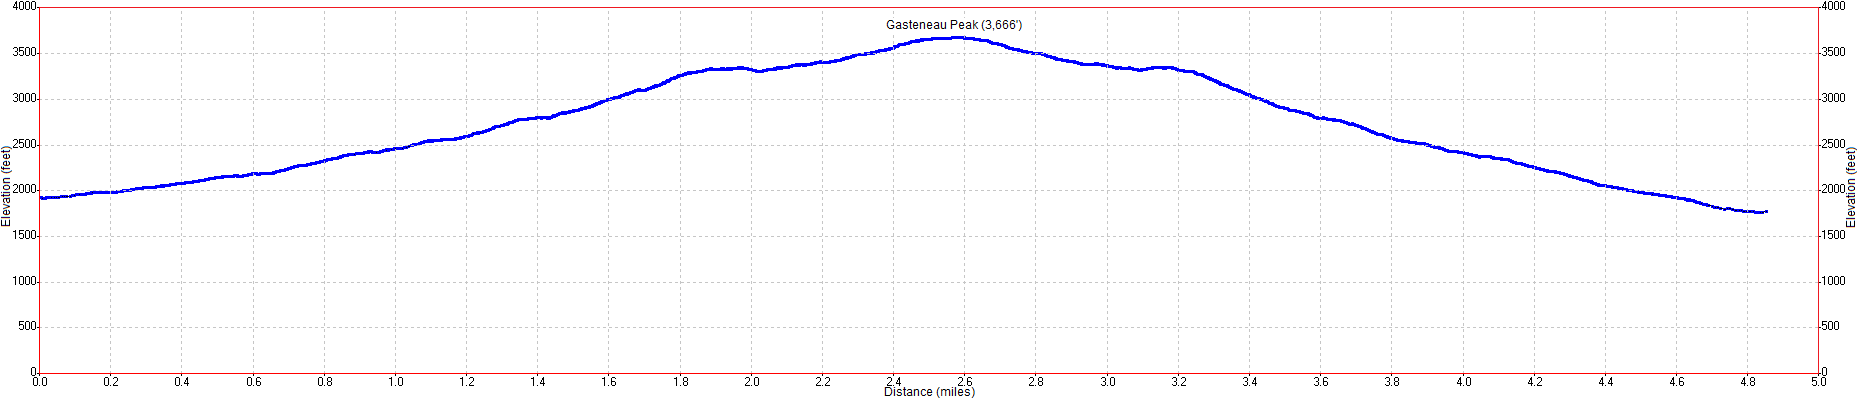 Gasteneau Peak Elevation Profile